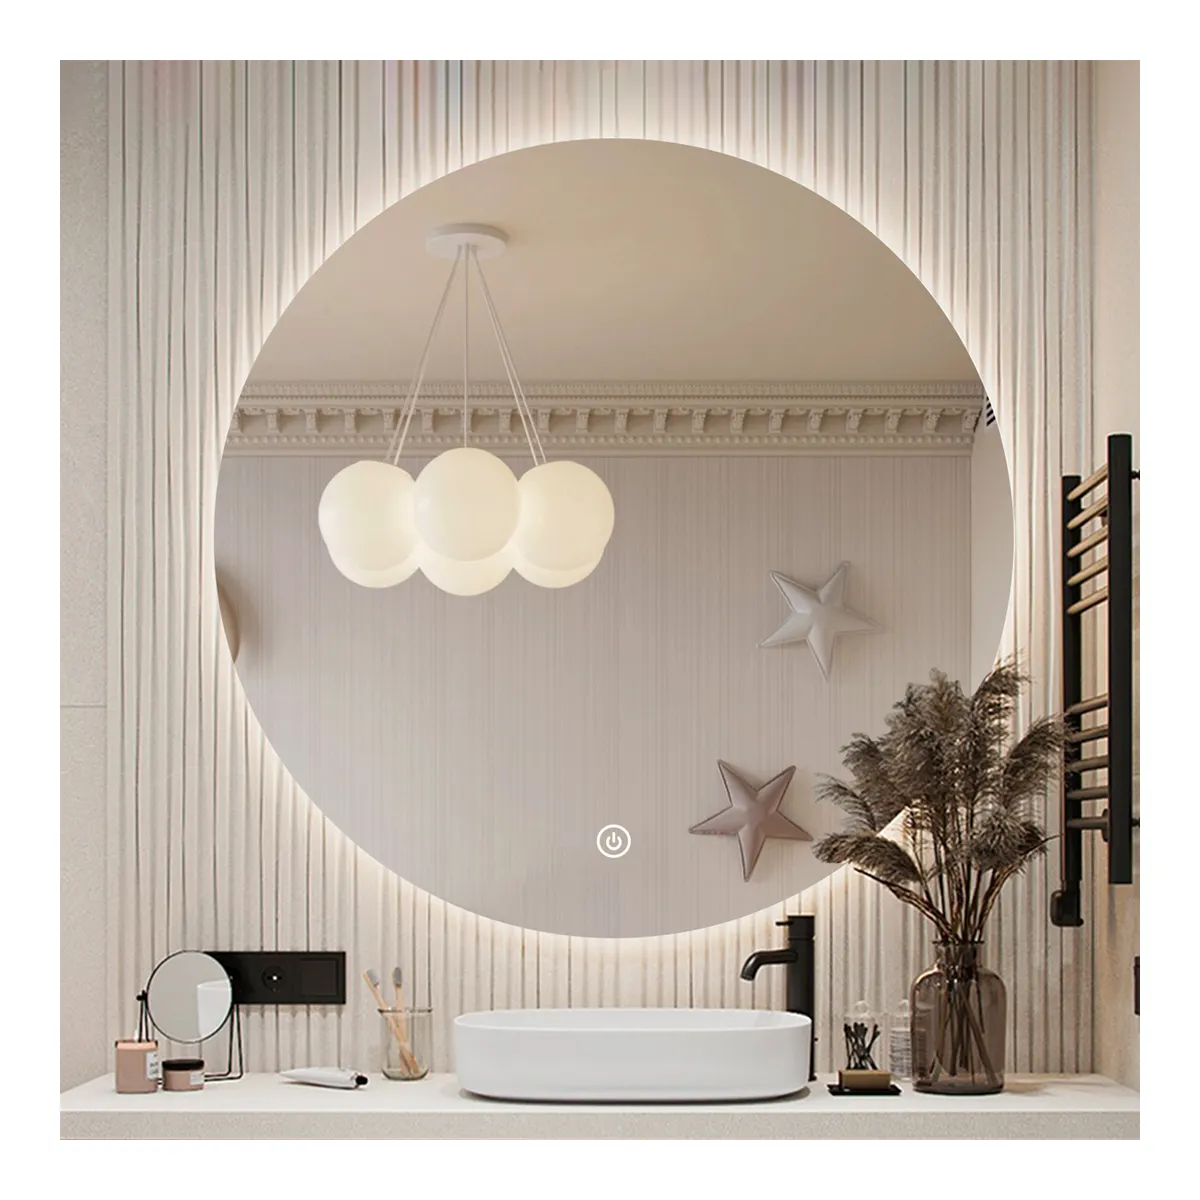 사용자 정의 라운드 벽 거울 실버 현대 목욕 Led 빛 스마트 욕실 화장대 거울